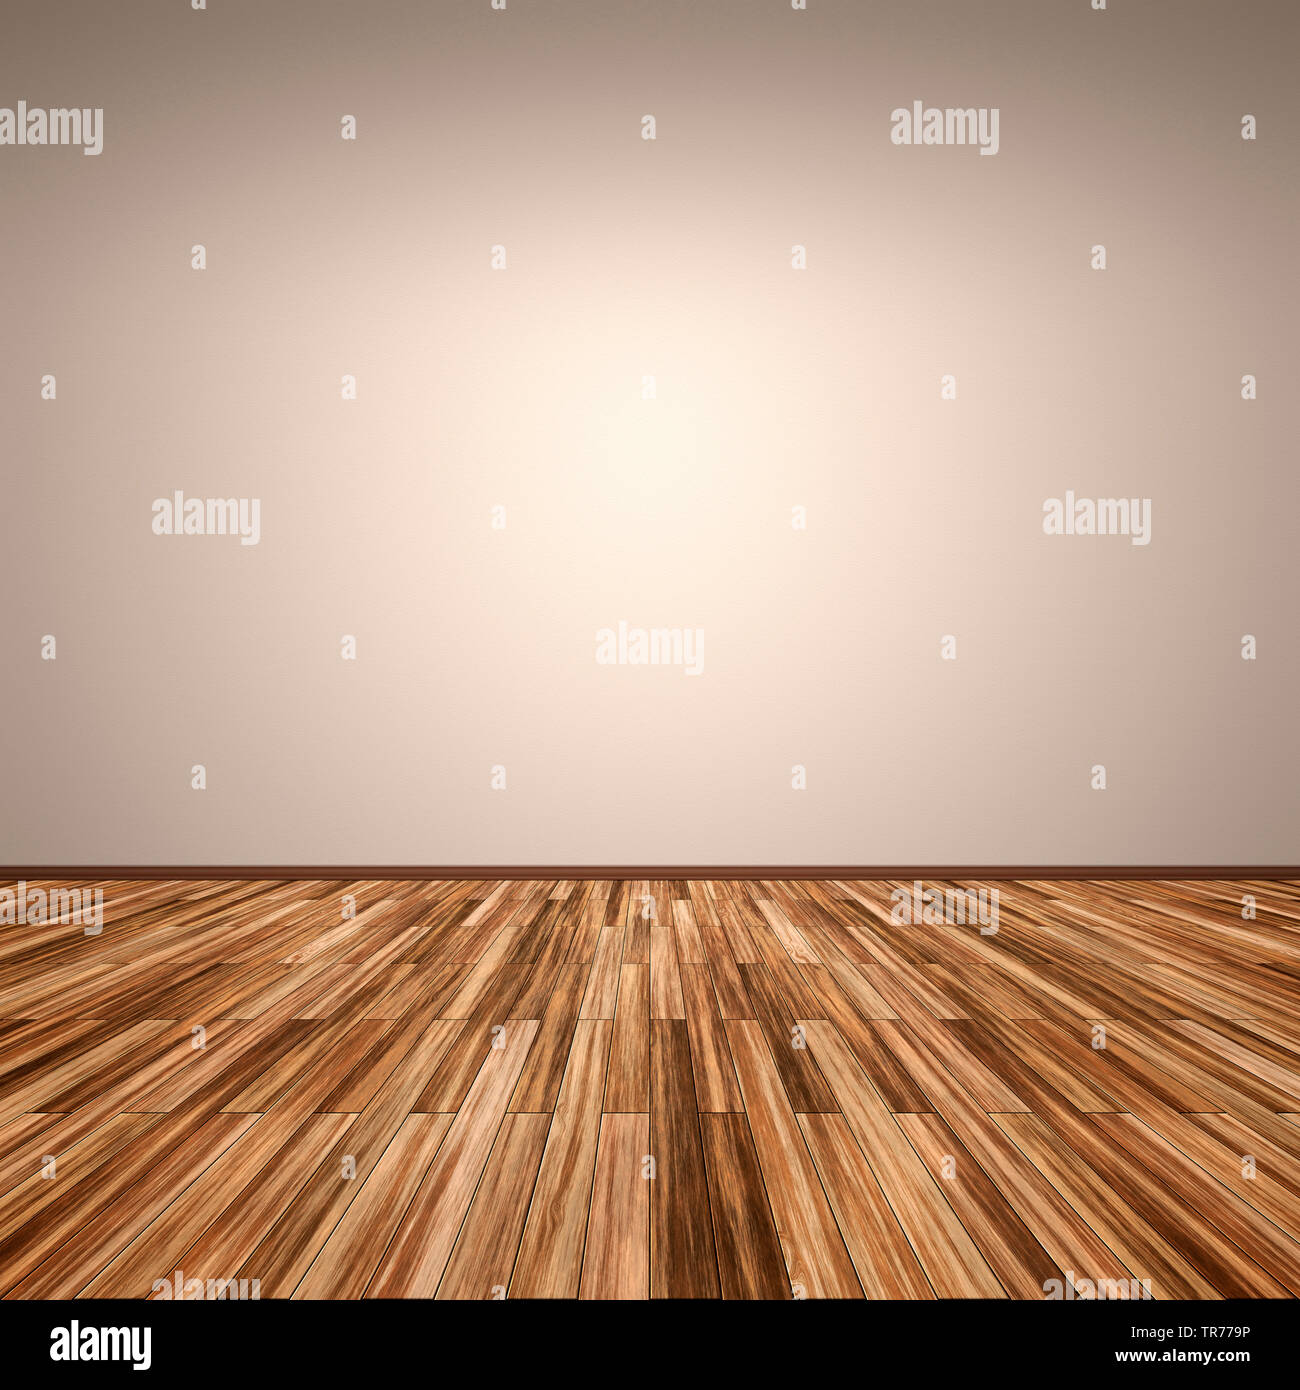 La computer grafica 3D, stanza vuota con pavimento in legno e la parete di colore marrone chiaro Foto Stock